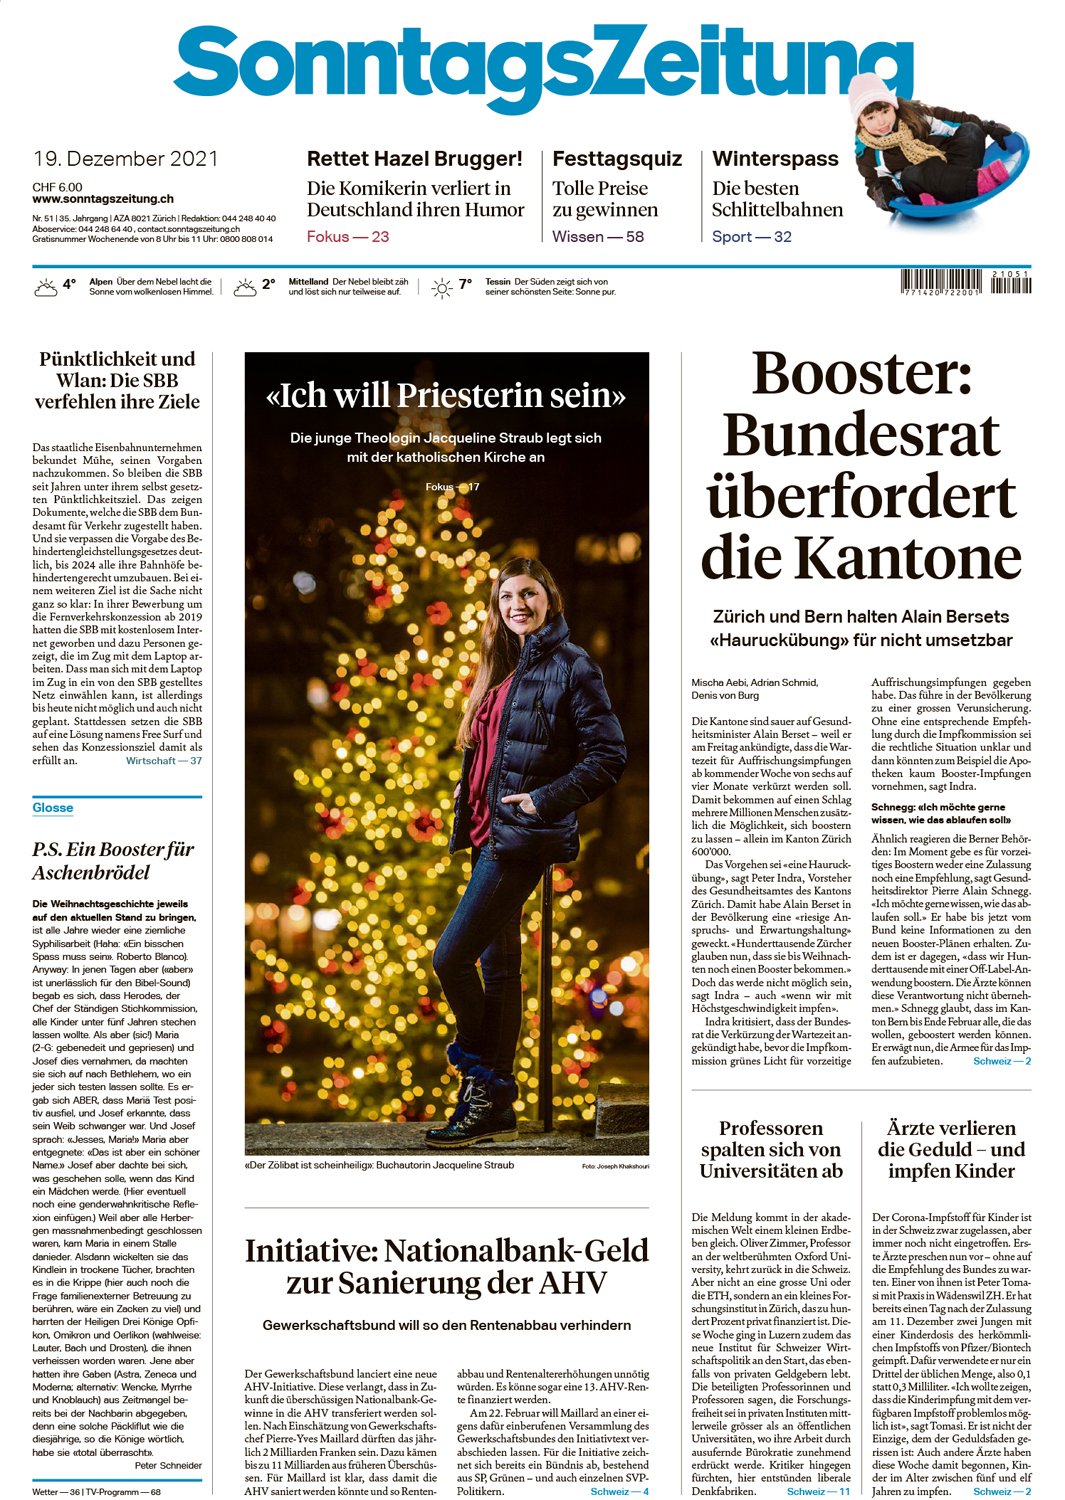 Seite_1_SonntagsZeitung_2021-12-19 copy.jpg